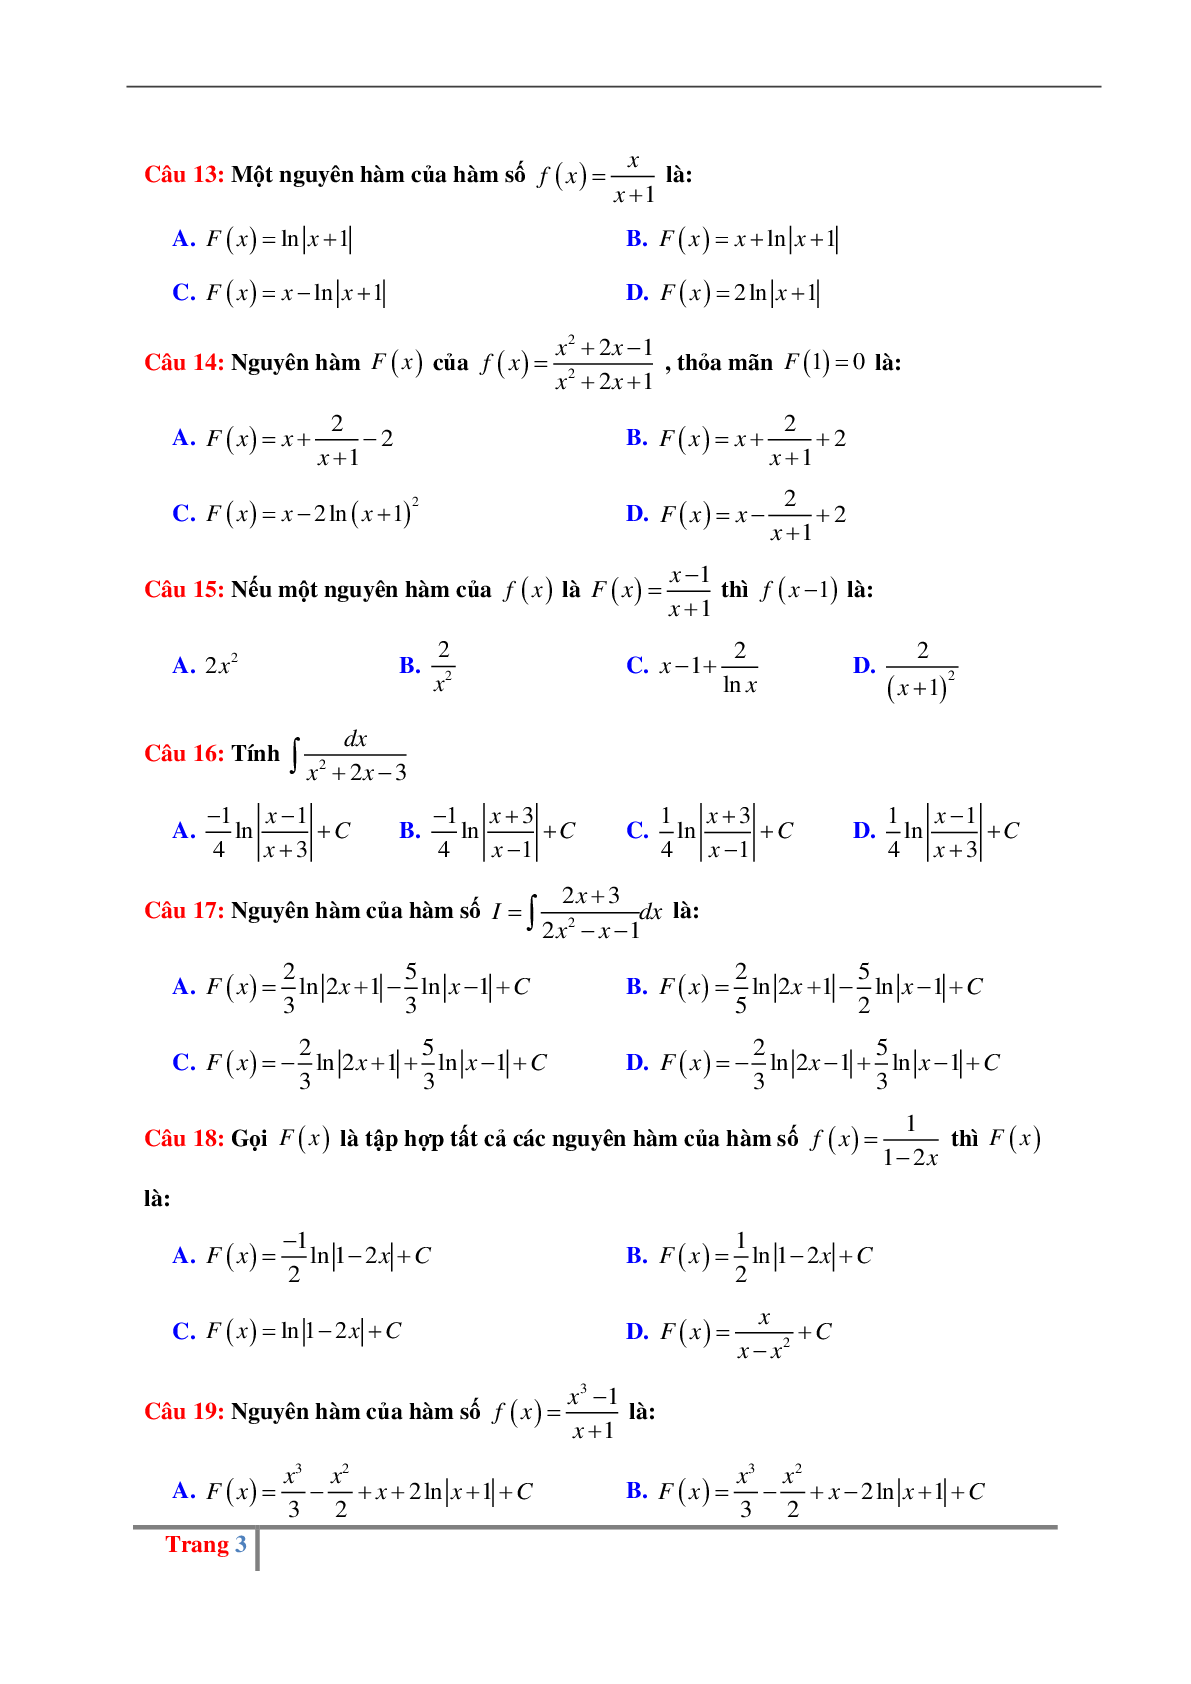 Các dạng bài tập về Nguyên hàm hữu tỉ có đáp án (trang 3)